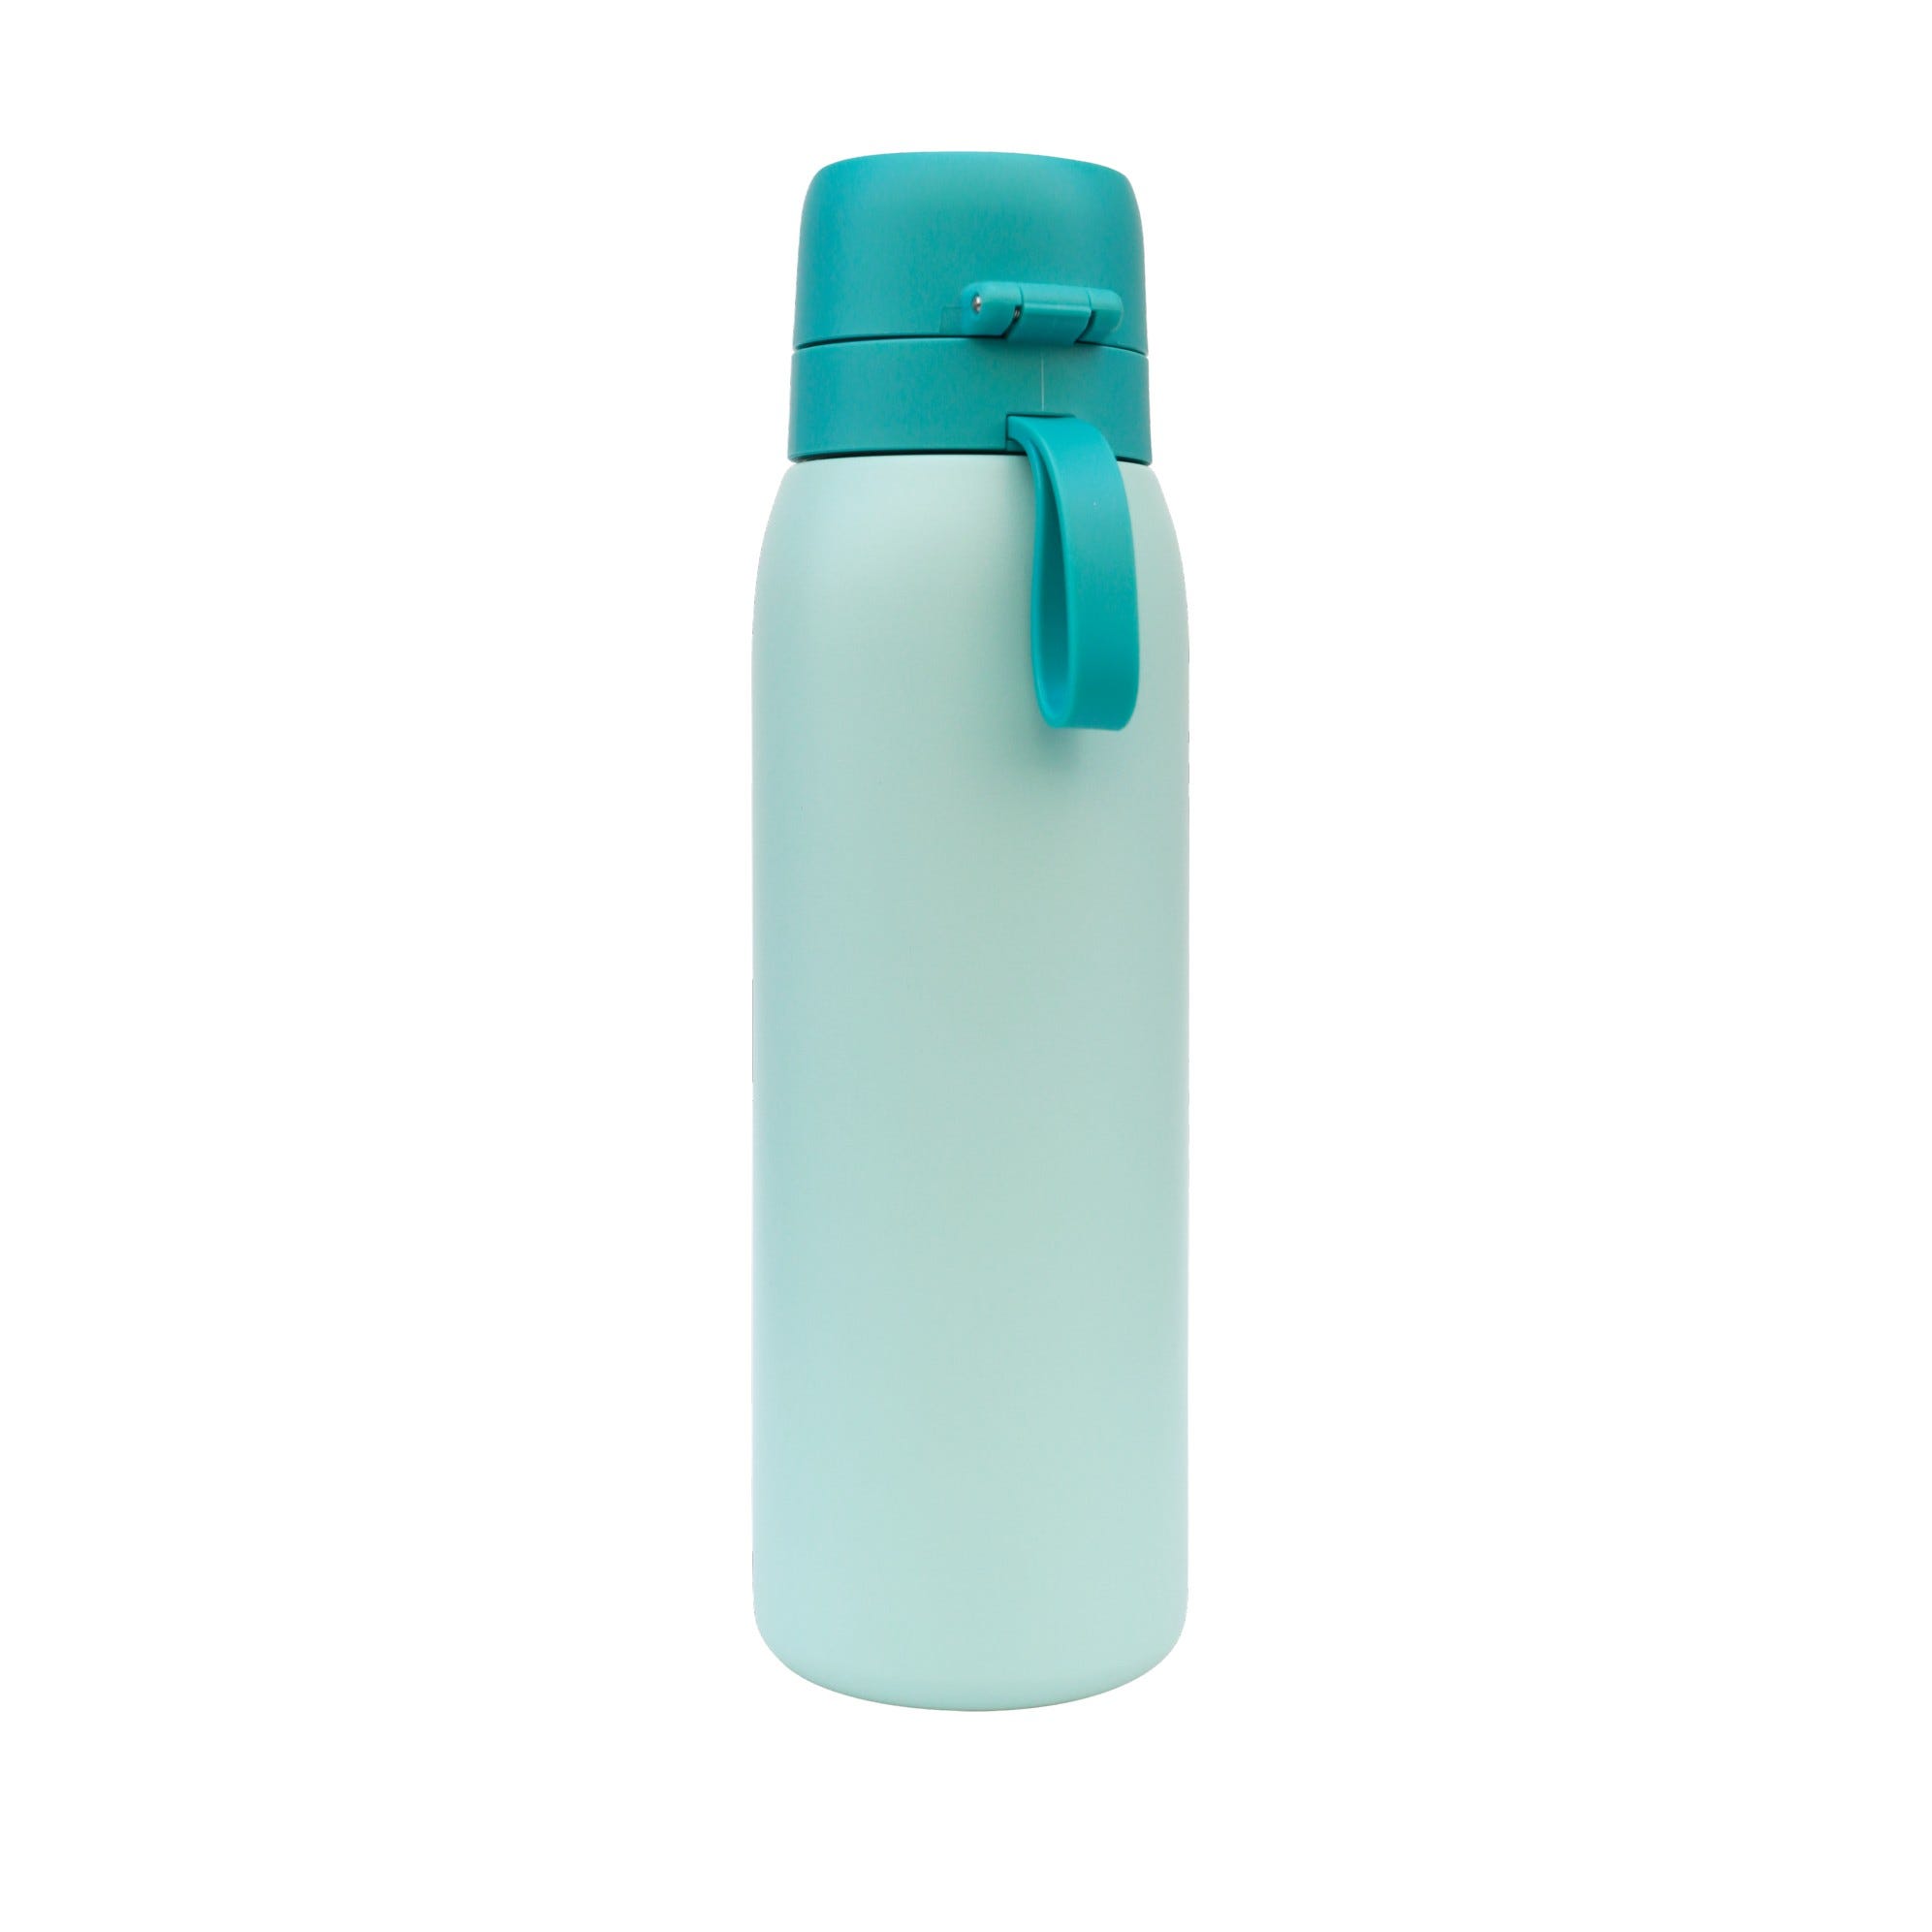 TAPP Water BottlePro - Botella reutilizable. Filtra +80 contaminantes.  Libre de BPA. Recambios sostenibles y cierre hermético. 750ml.